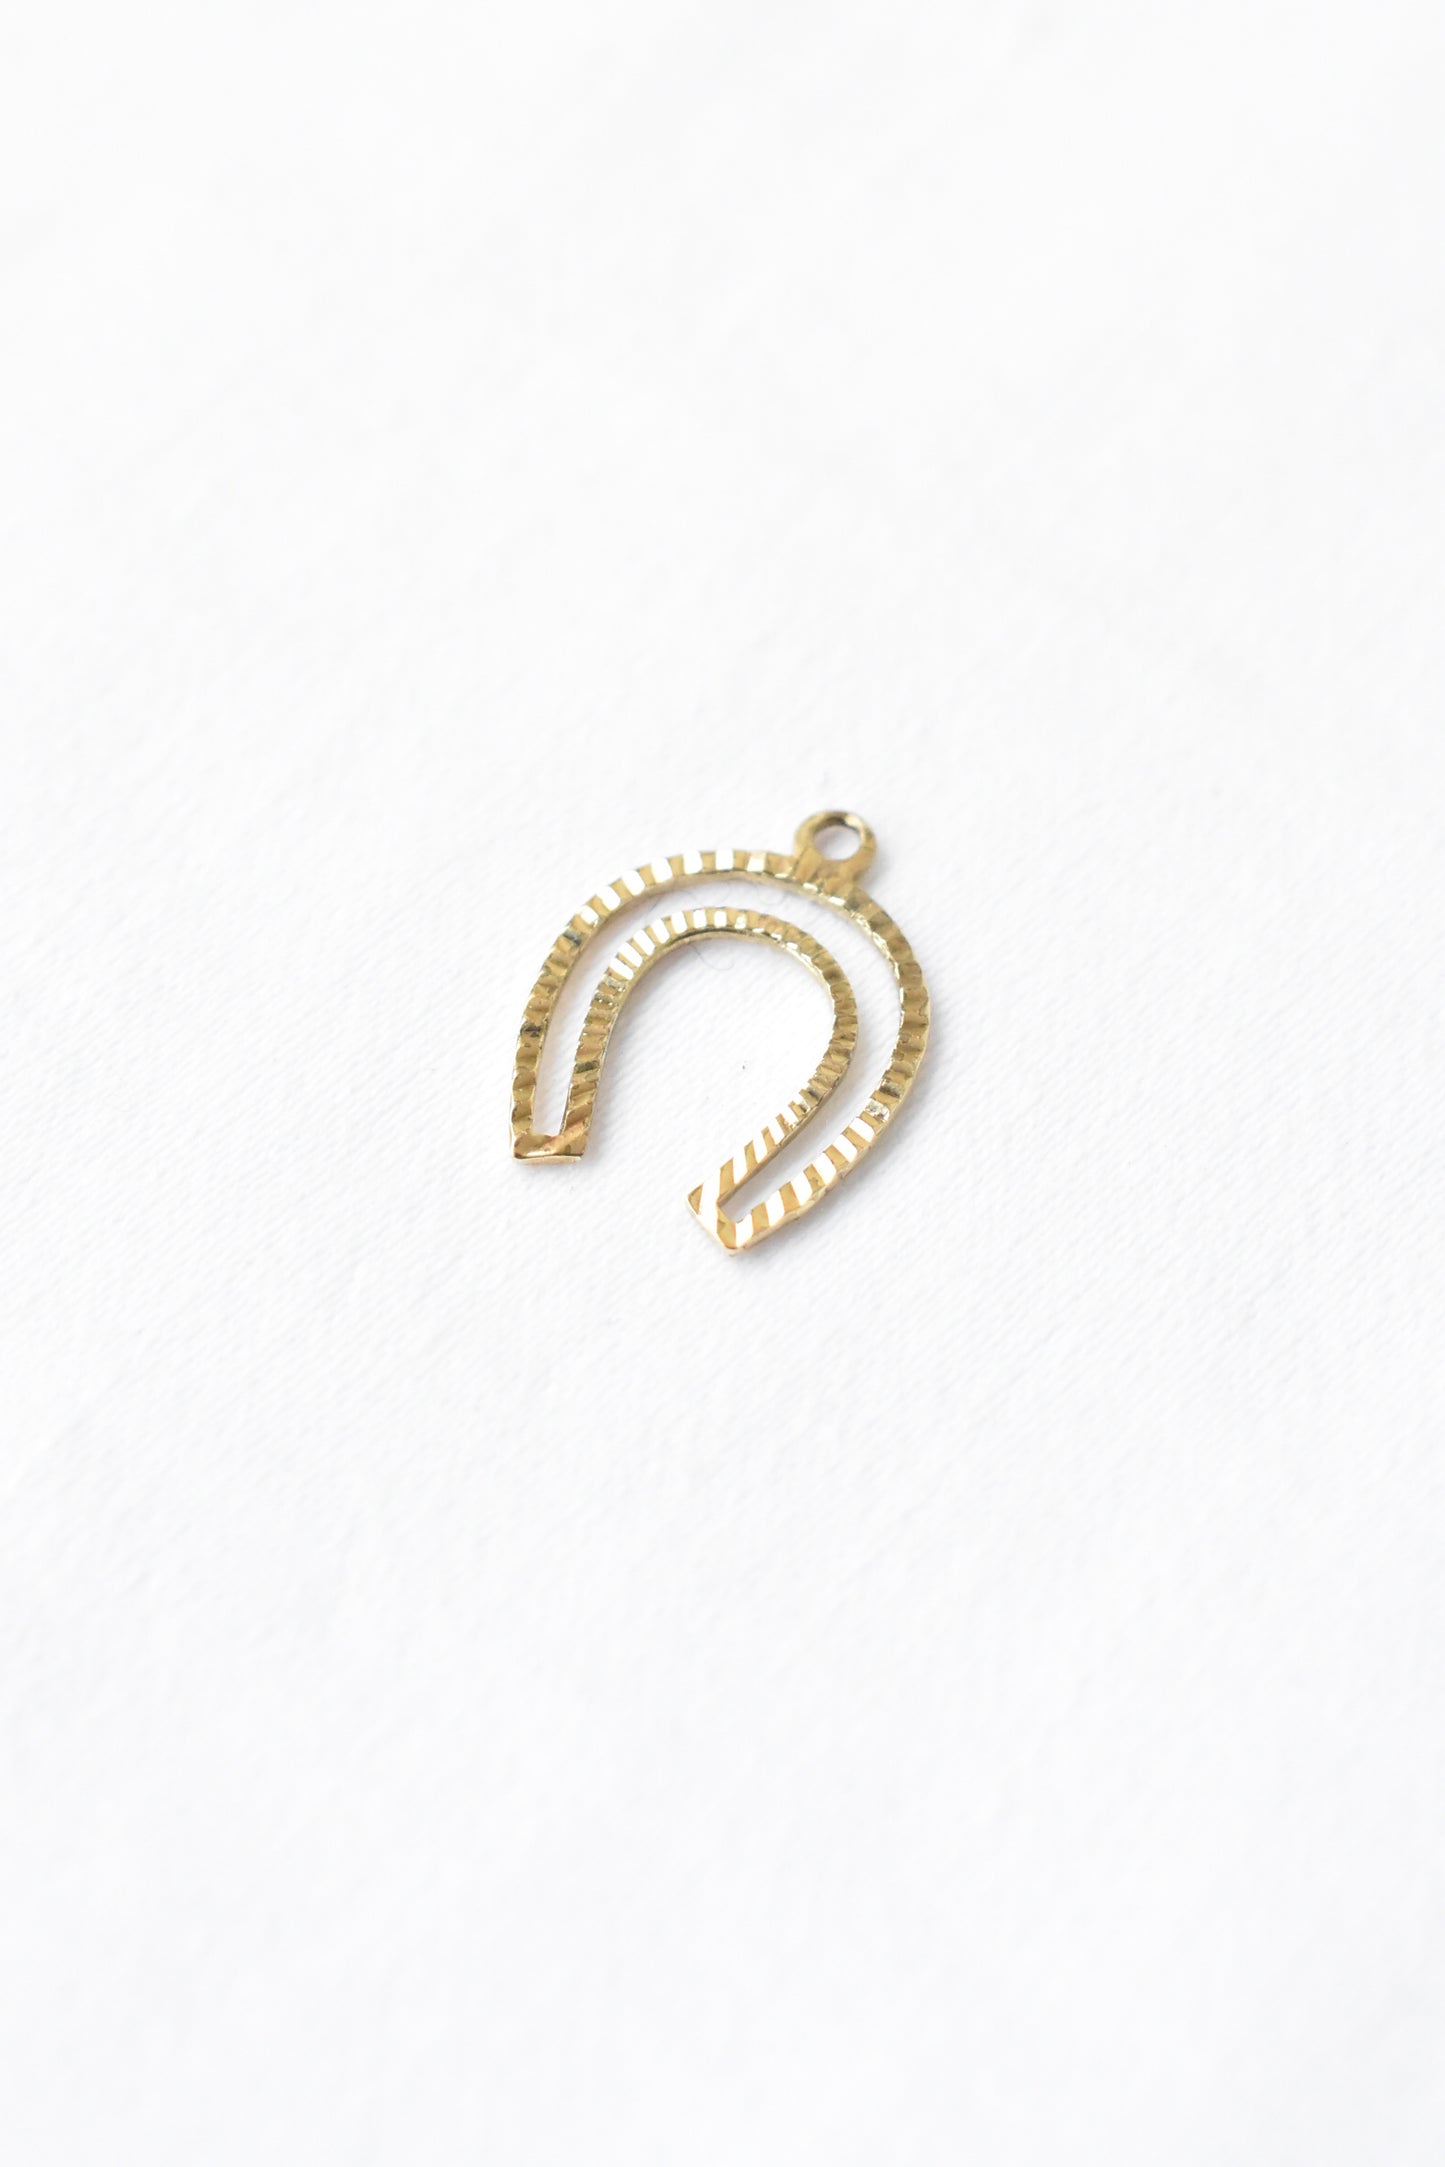 8ct gold horseshoe charm pendant